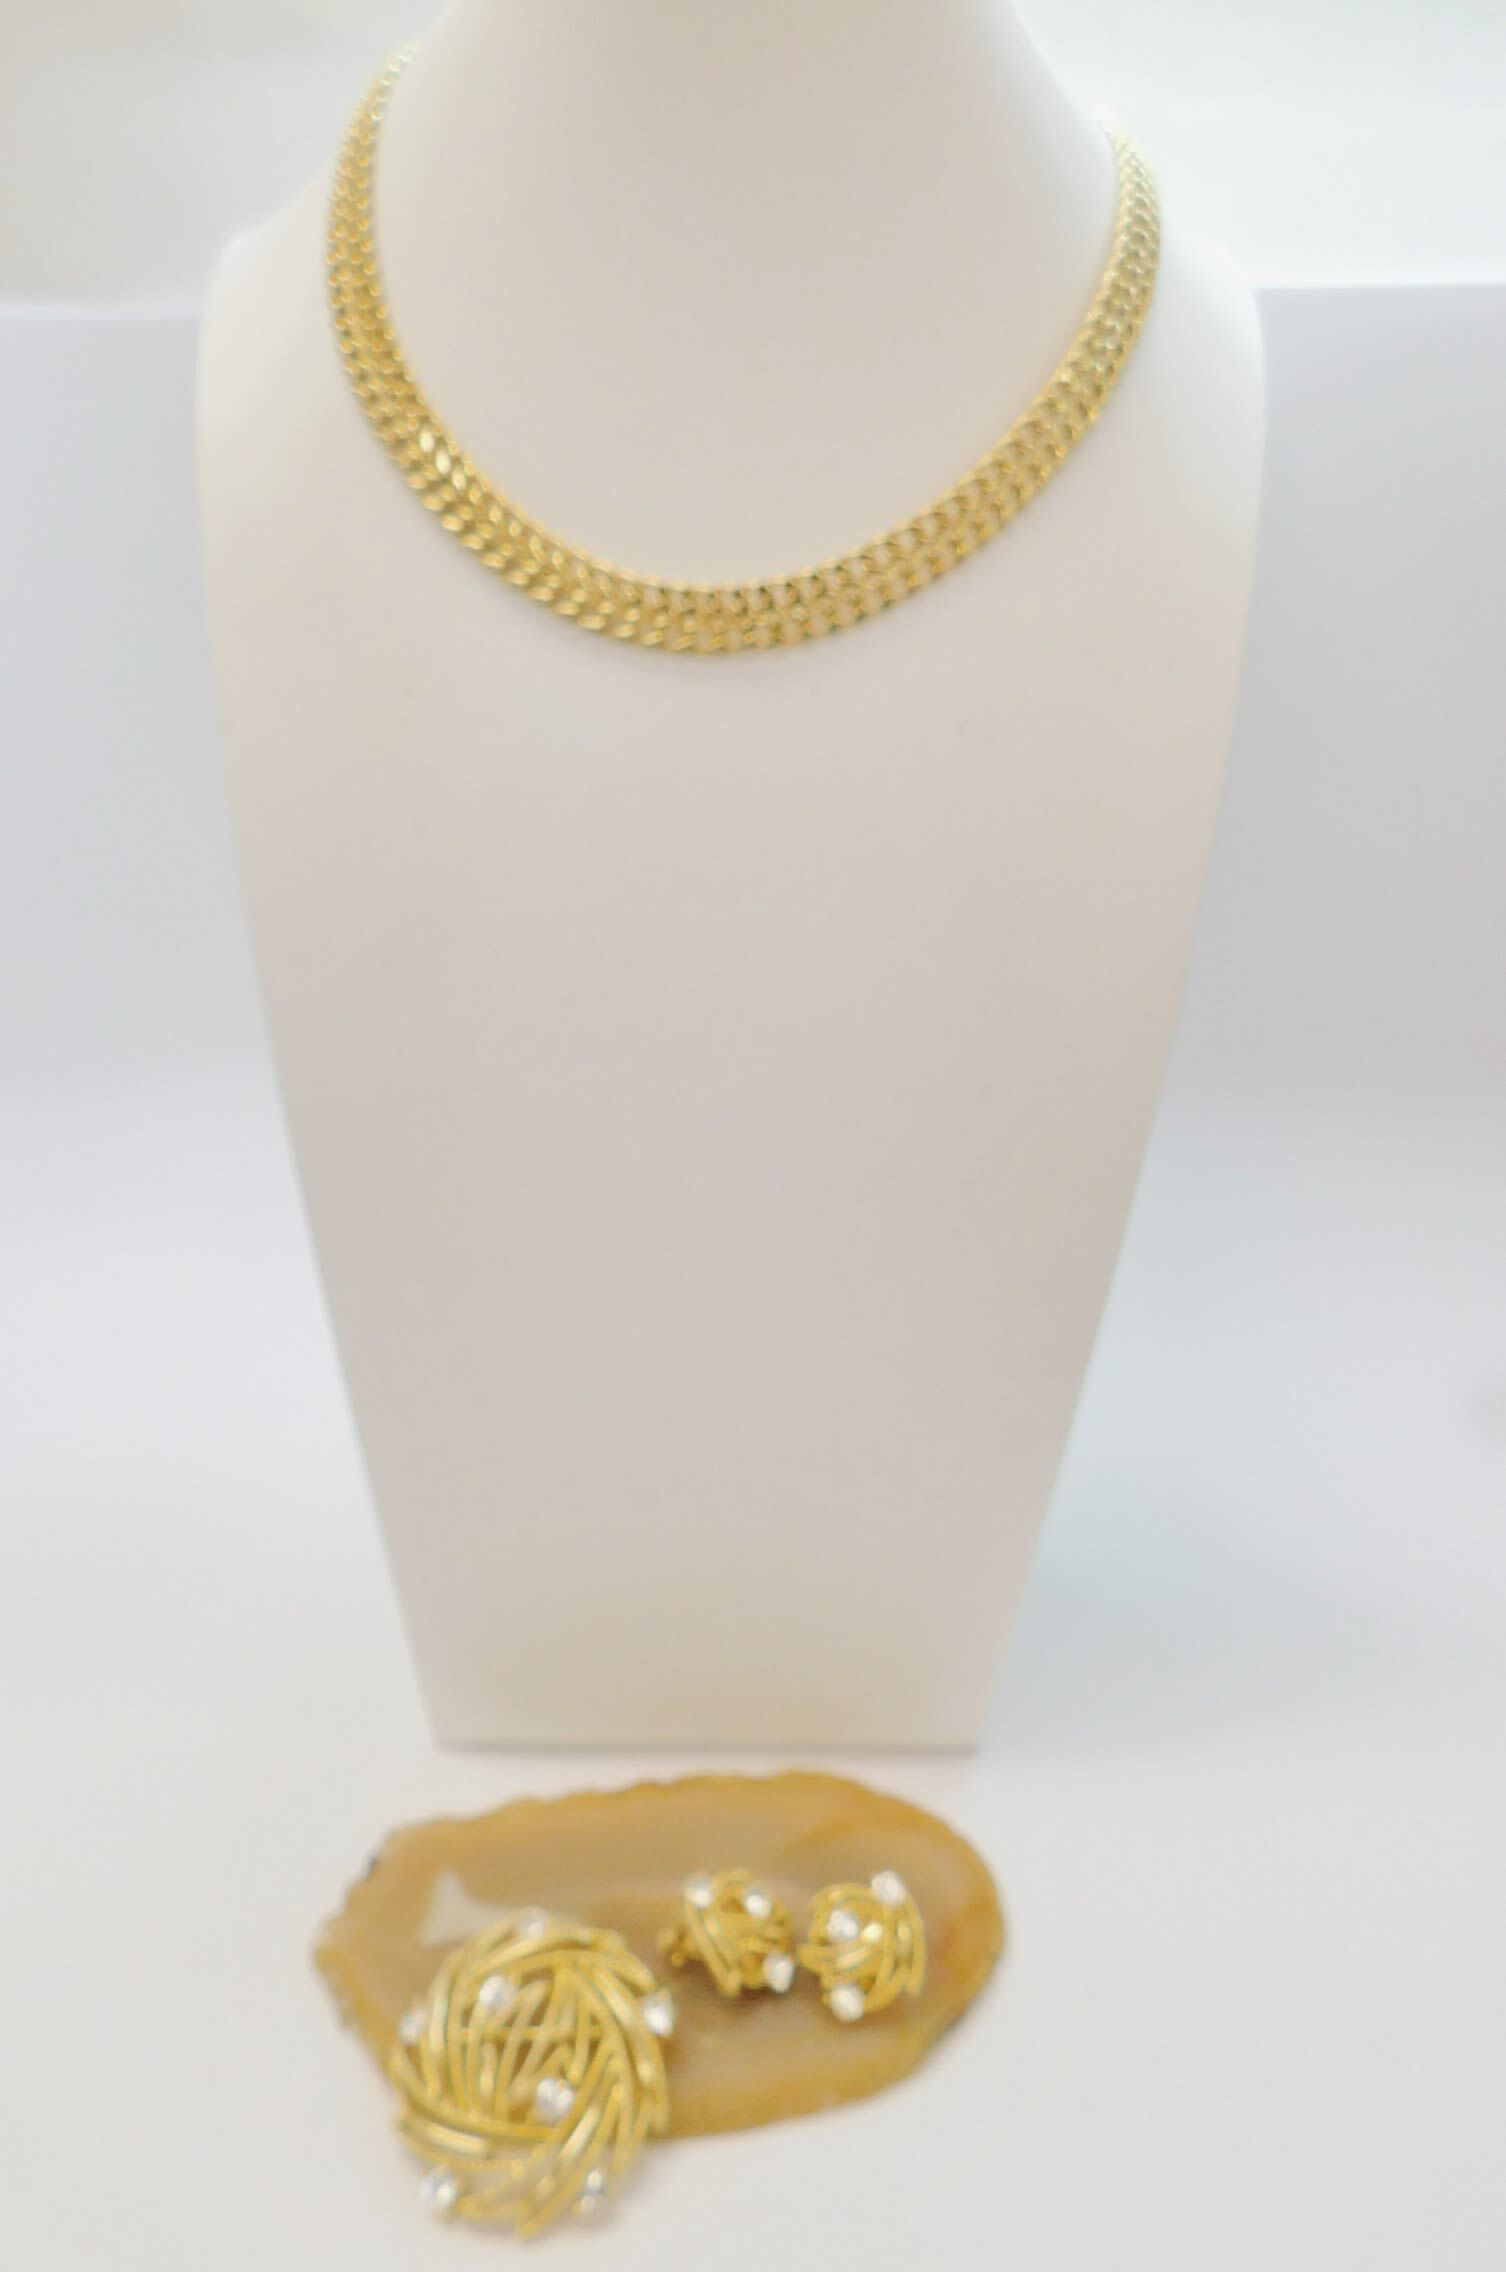 Vintage Monet Gold Chain Necklace, Monet Station Chain Necklace, Monet  Jewelry, 70s Monet Necklace, 54 , Monet Gold Tone Chain Necklace - Etsy